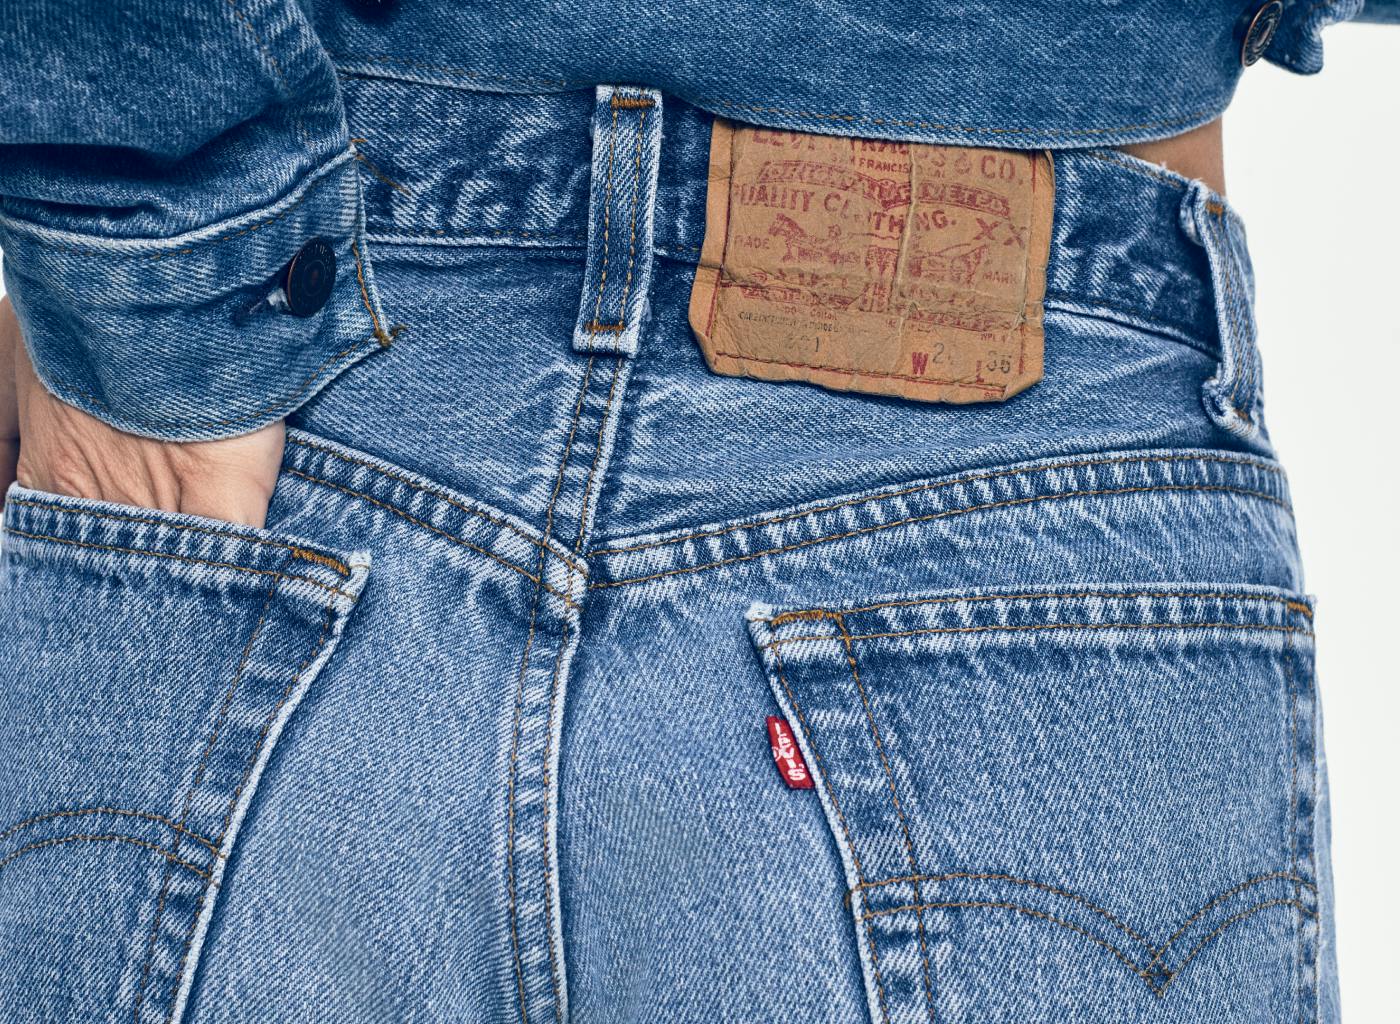 Actualizar 104+ imagen levi’s classic jeans